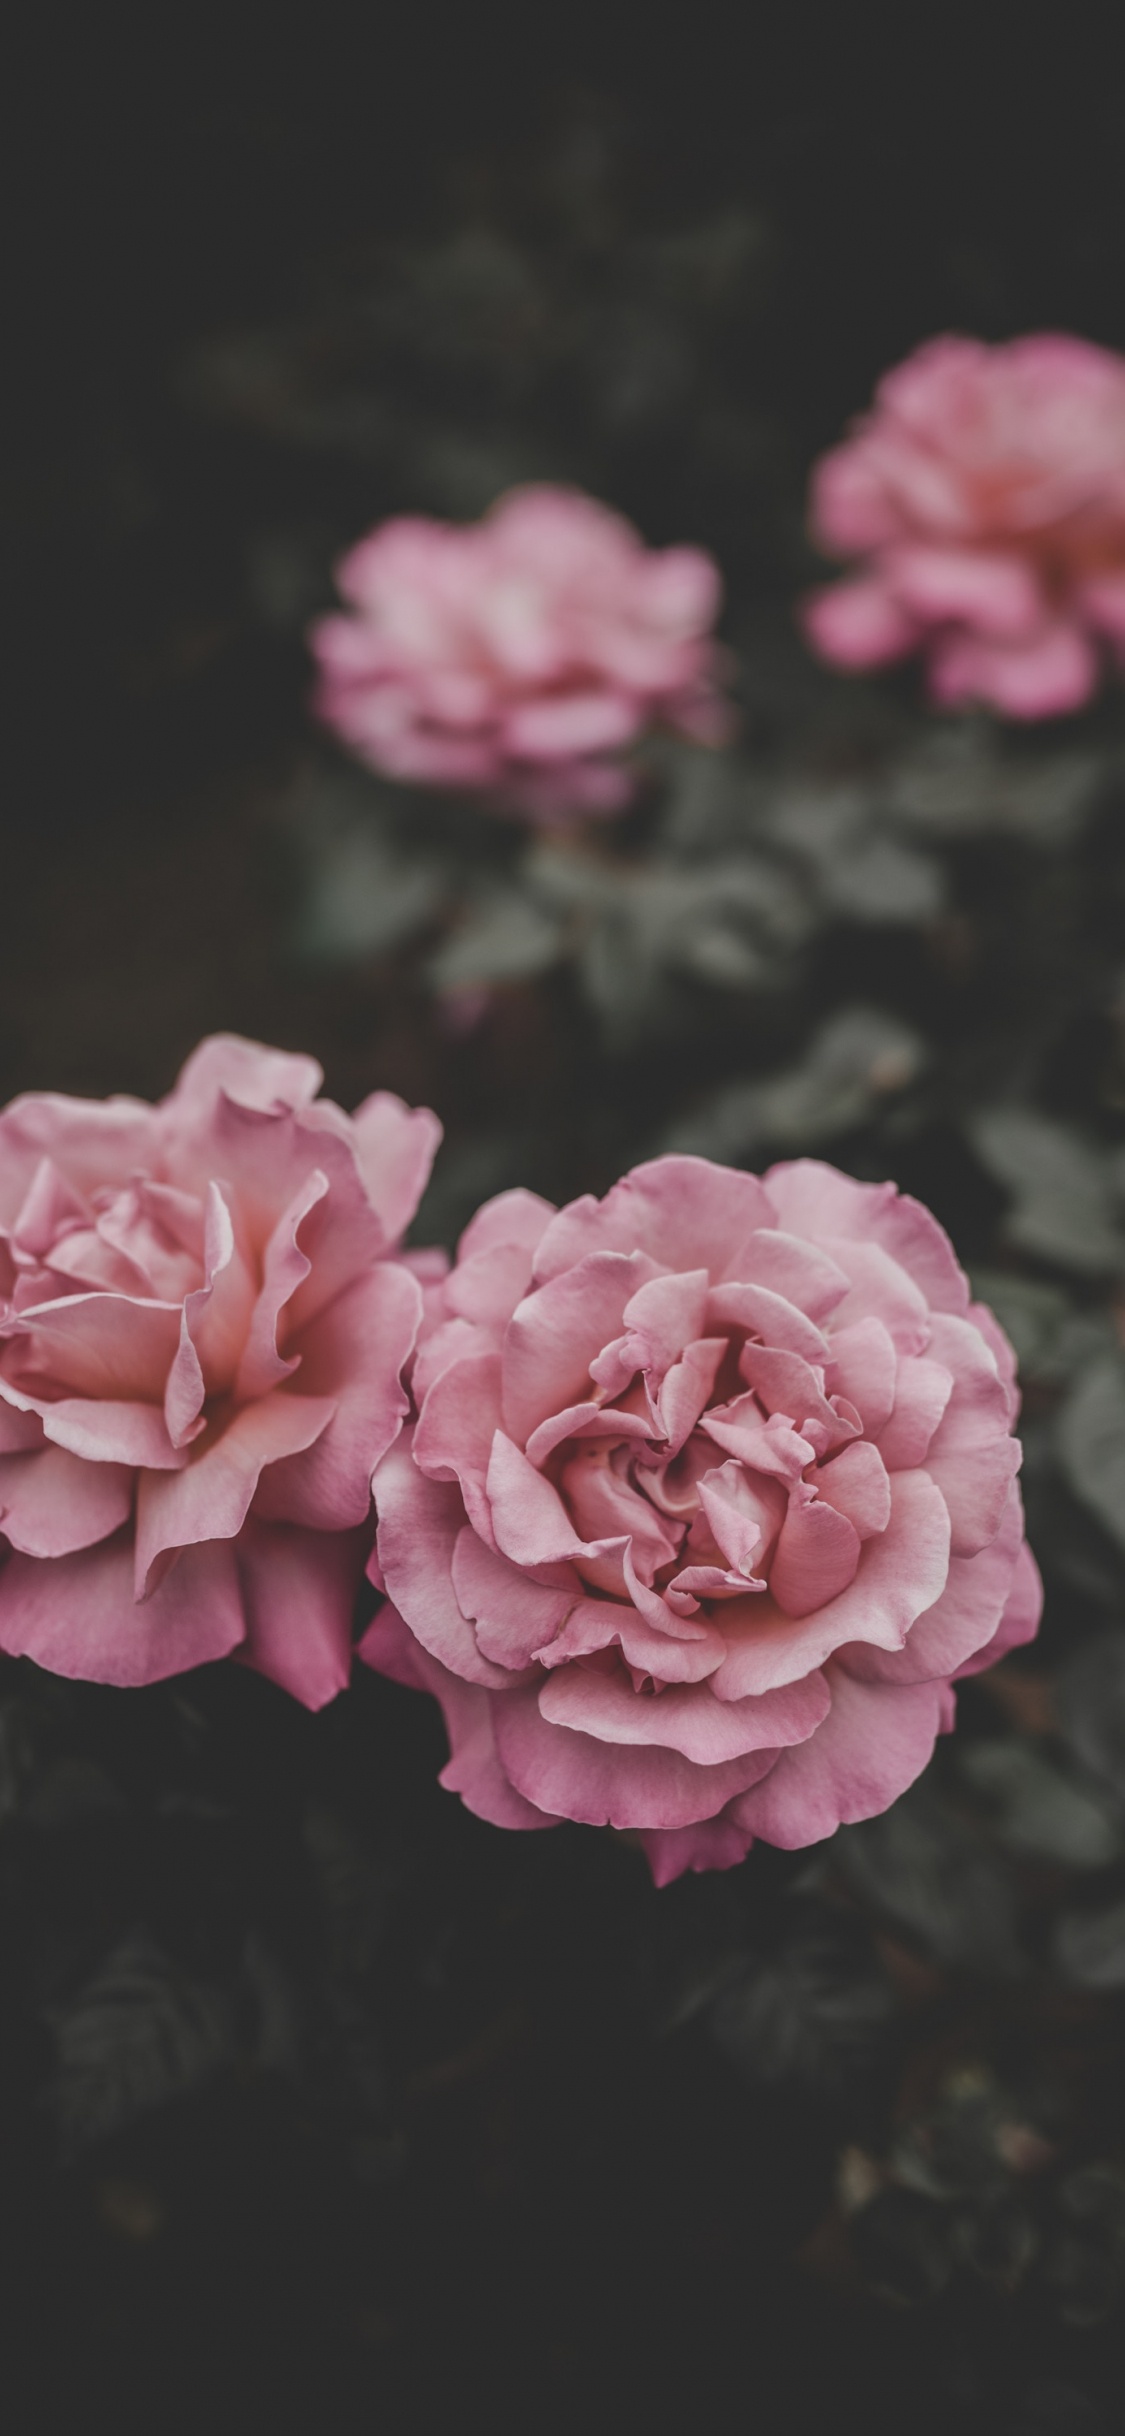 Pink Flower in Tilt Shift Lens. Wallpaper in 1125x2436 Resolution